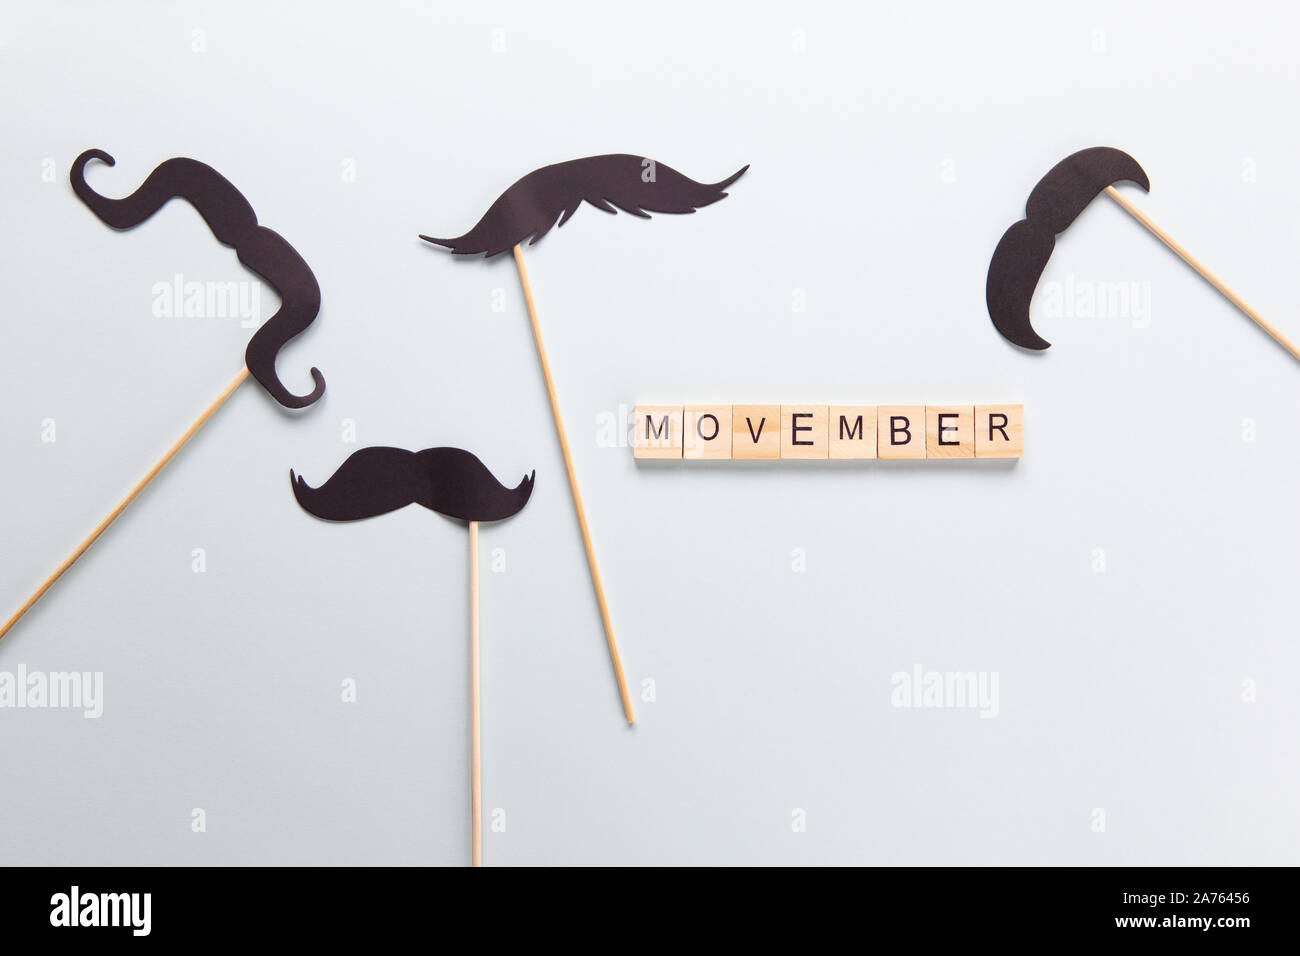 Moscou, Russie - 07 octobre 2019 : Inscription, Movember accessoires dans forme de moustaches noires sur des bâtons sur fond gris. Concept de la santé des hommes, p Banque D'Images